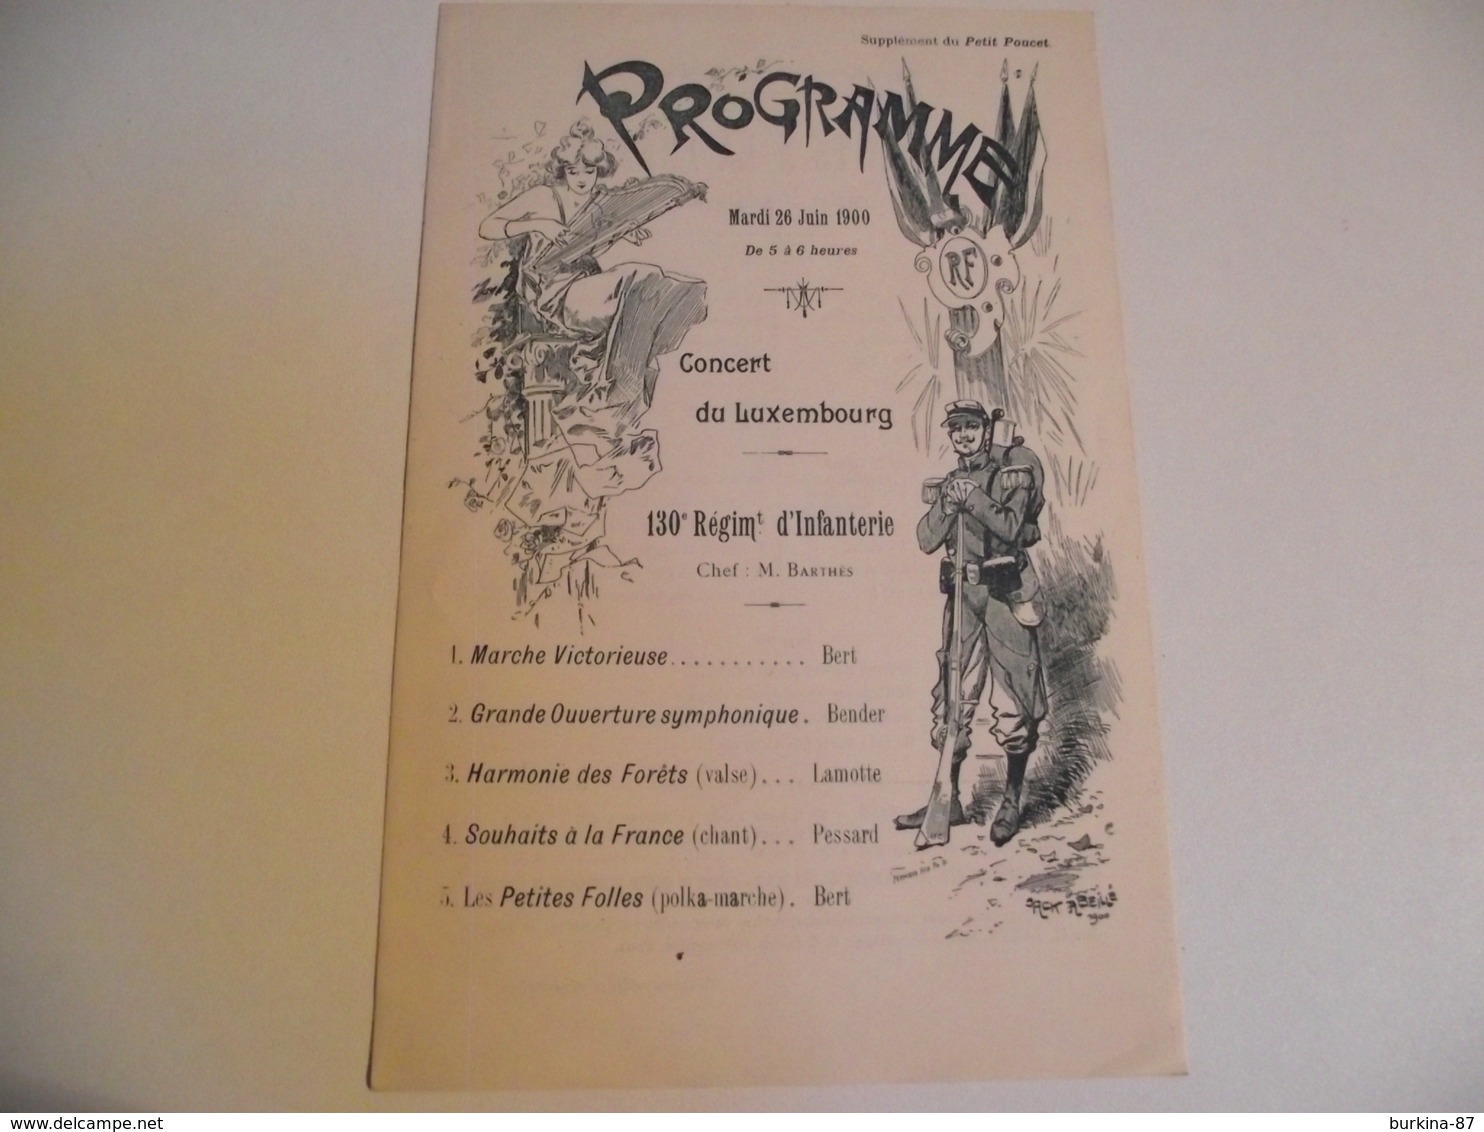 Programme, CONCERT Du LUXEMBOURG, 1900, 130 Ième Régimt INFANTERIE - Programmes